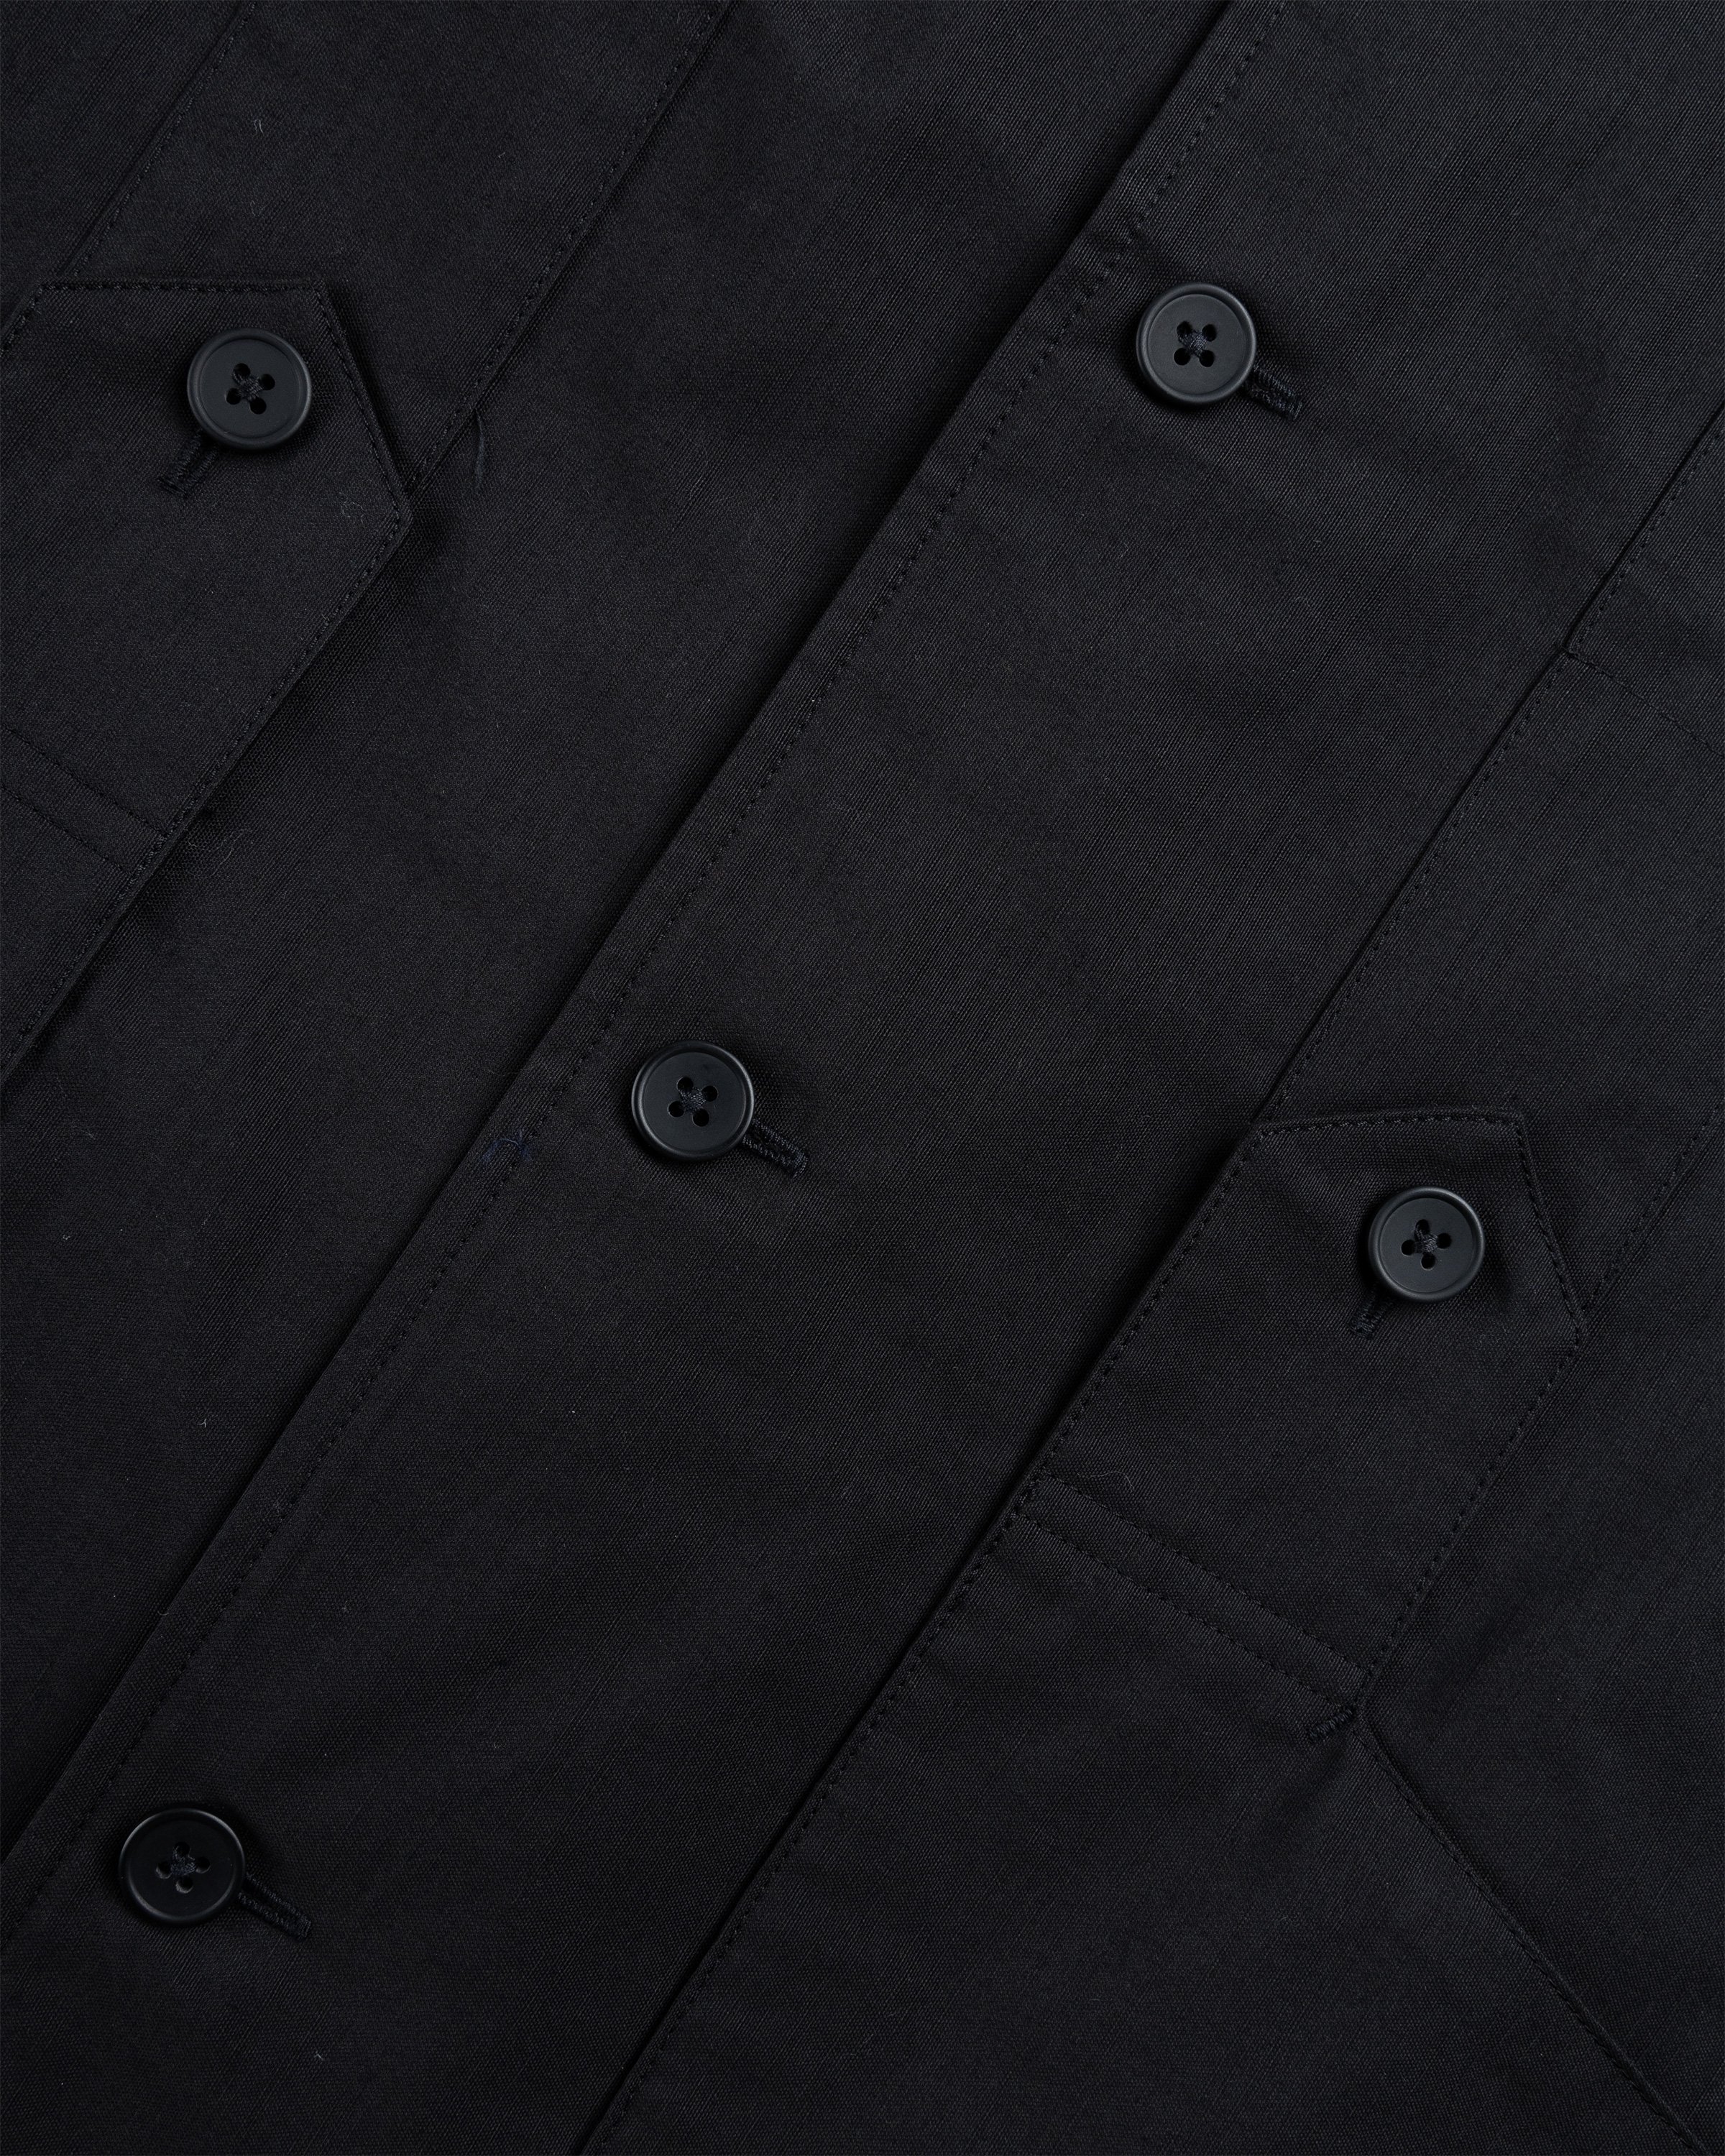 Y-3 - Longsleeve Workwear Shirt Black - Clothing - Black - Image 5